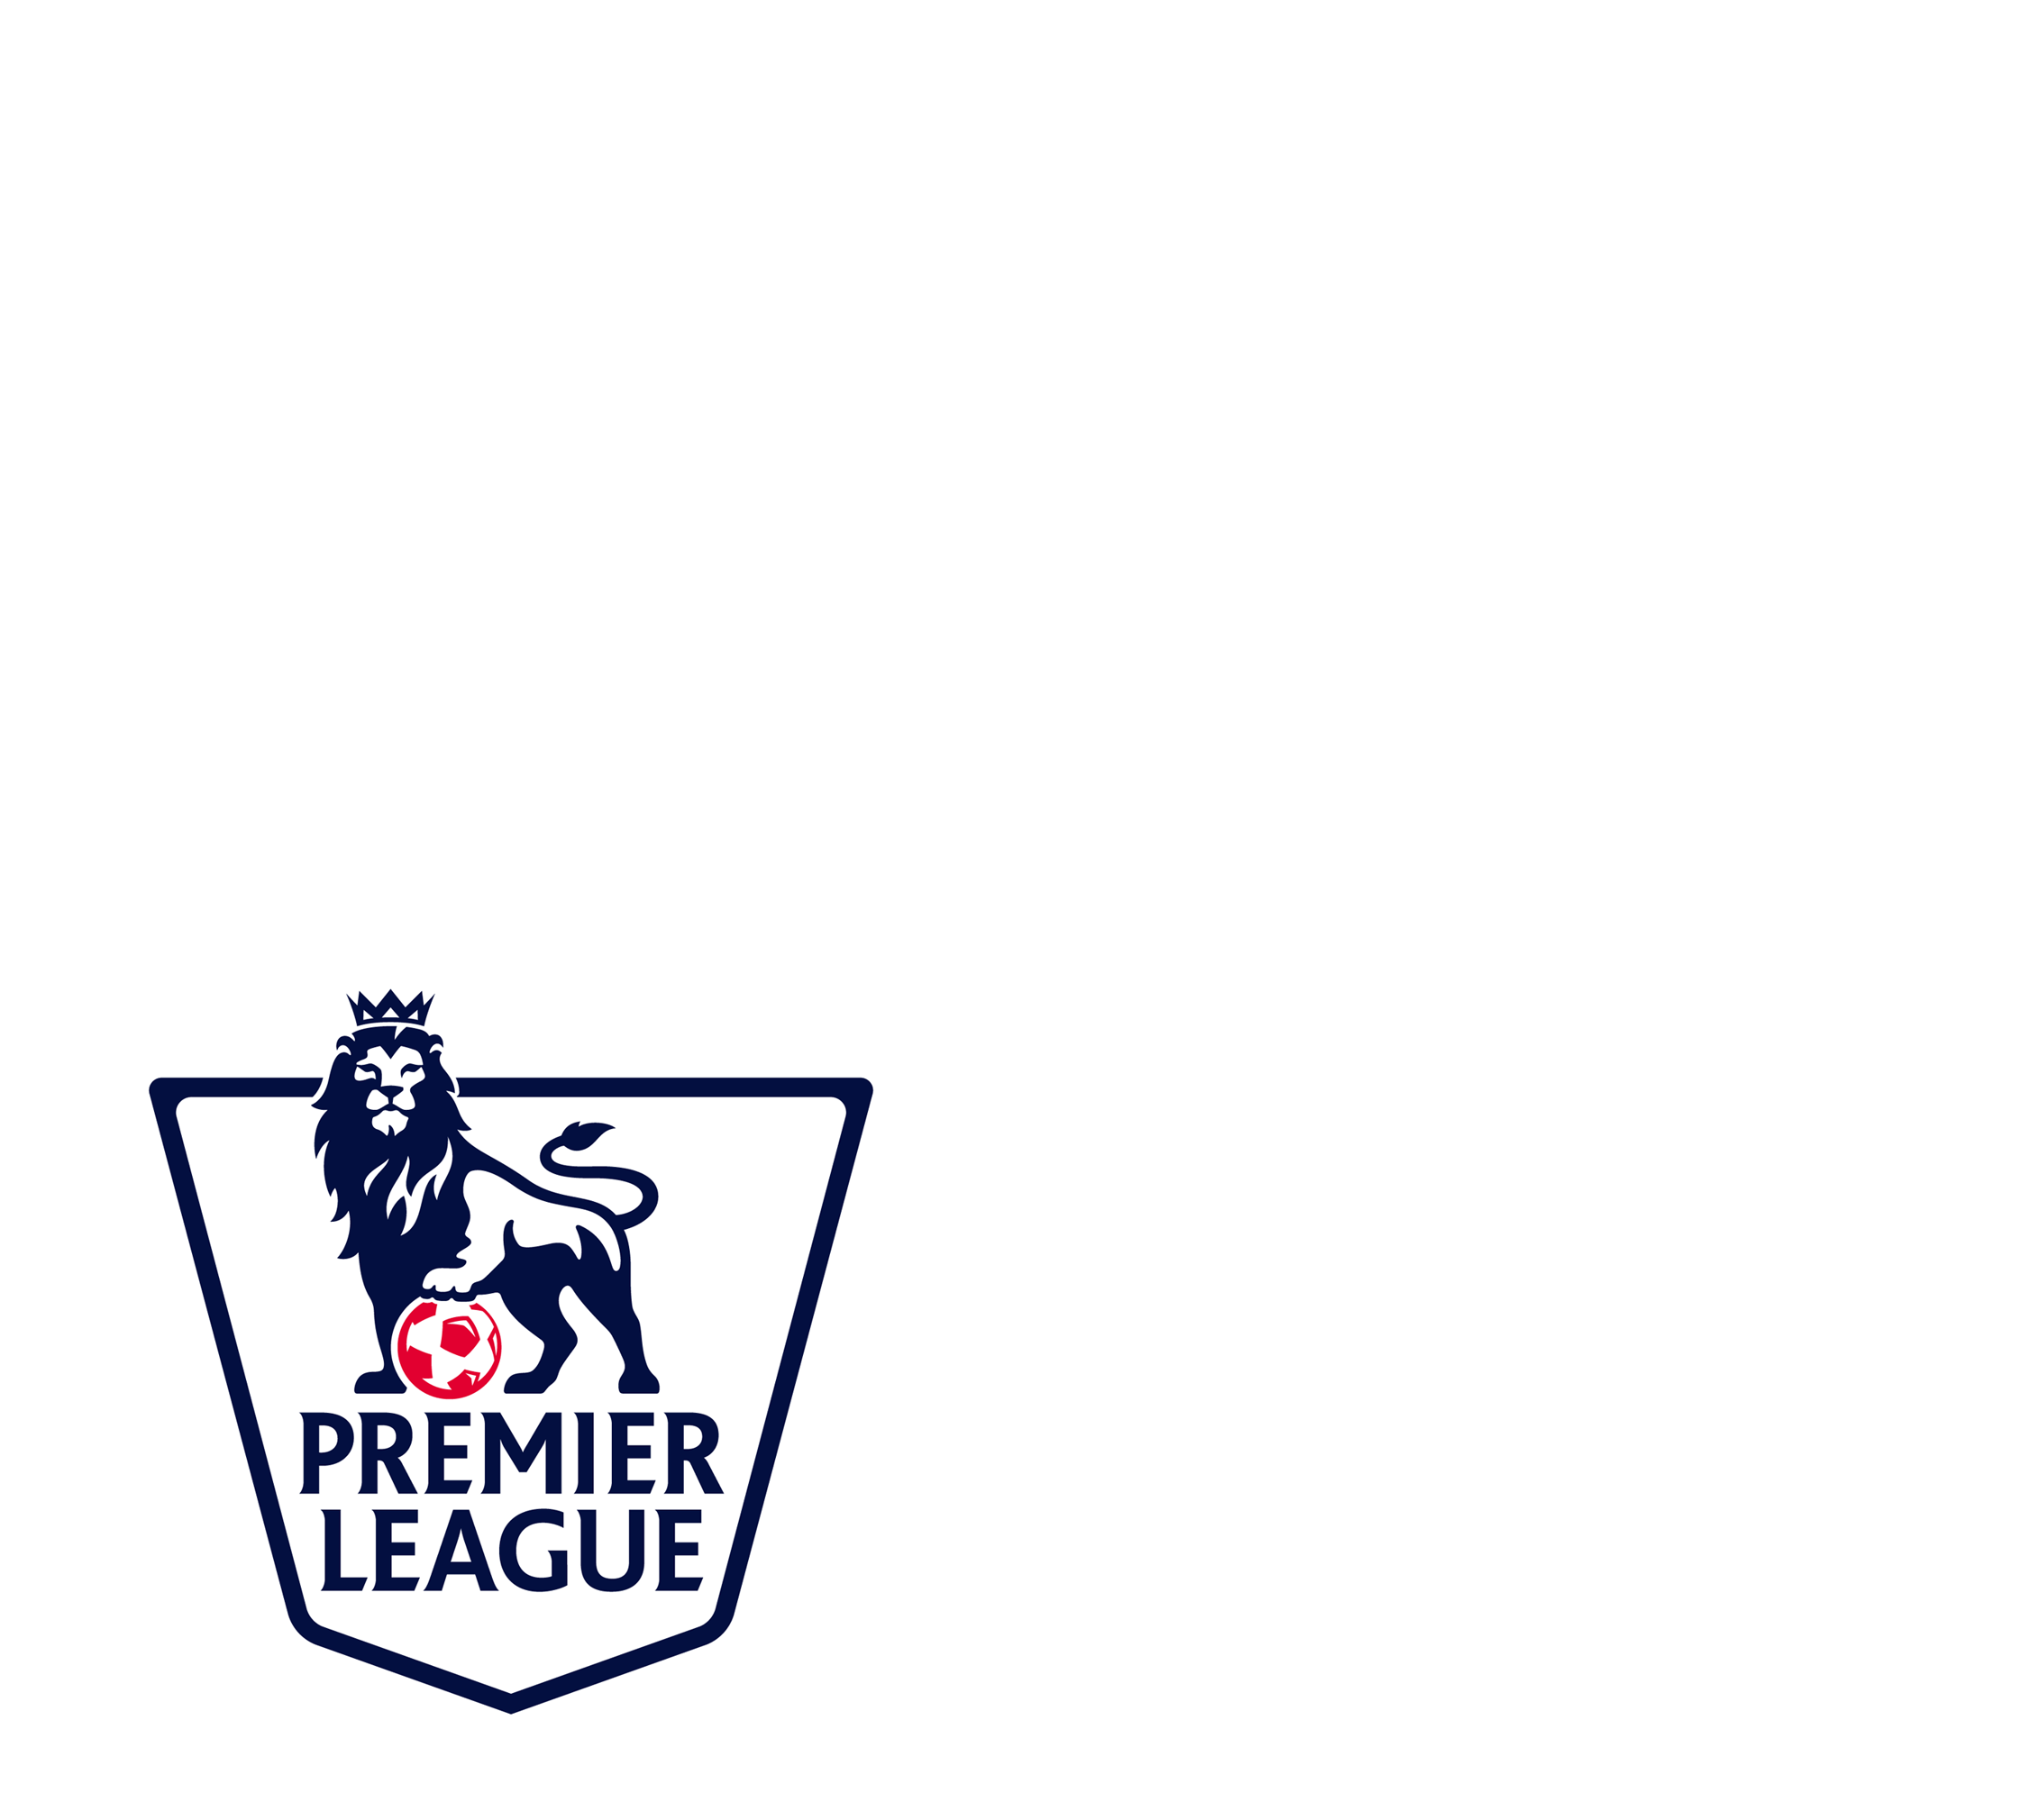 Premier League 2017/18